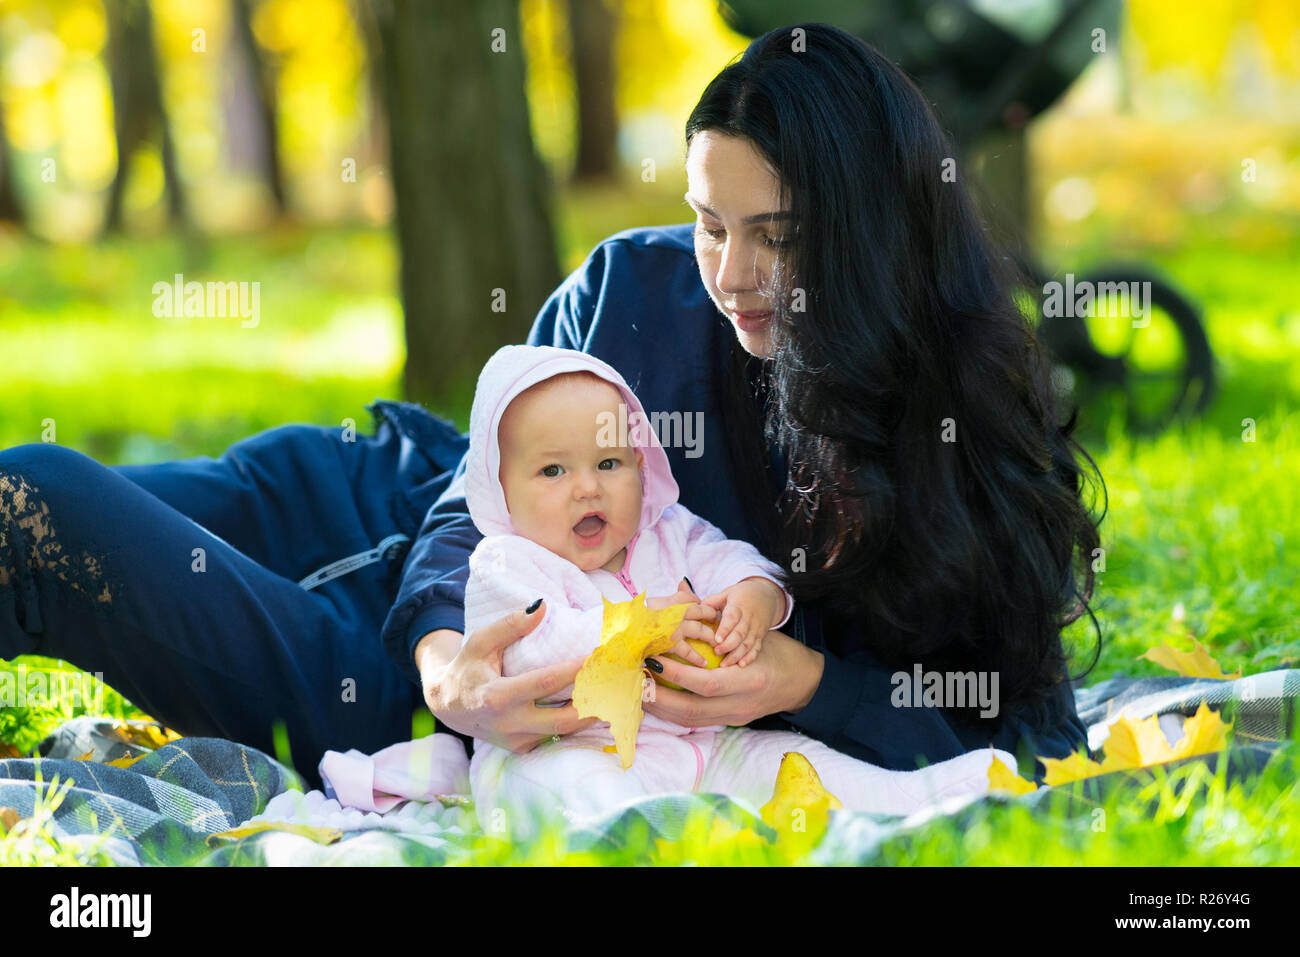 Riendo poco feliz bebé niña jugando con un colorido amarillo hojas caer como ella lo abraza con su amorosa madre sobre una manta en el parque Foto de stock